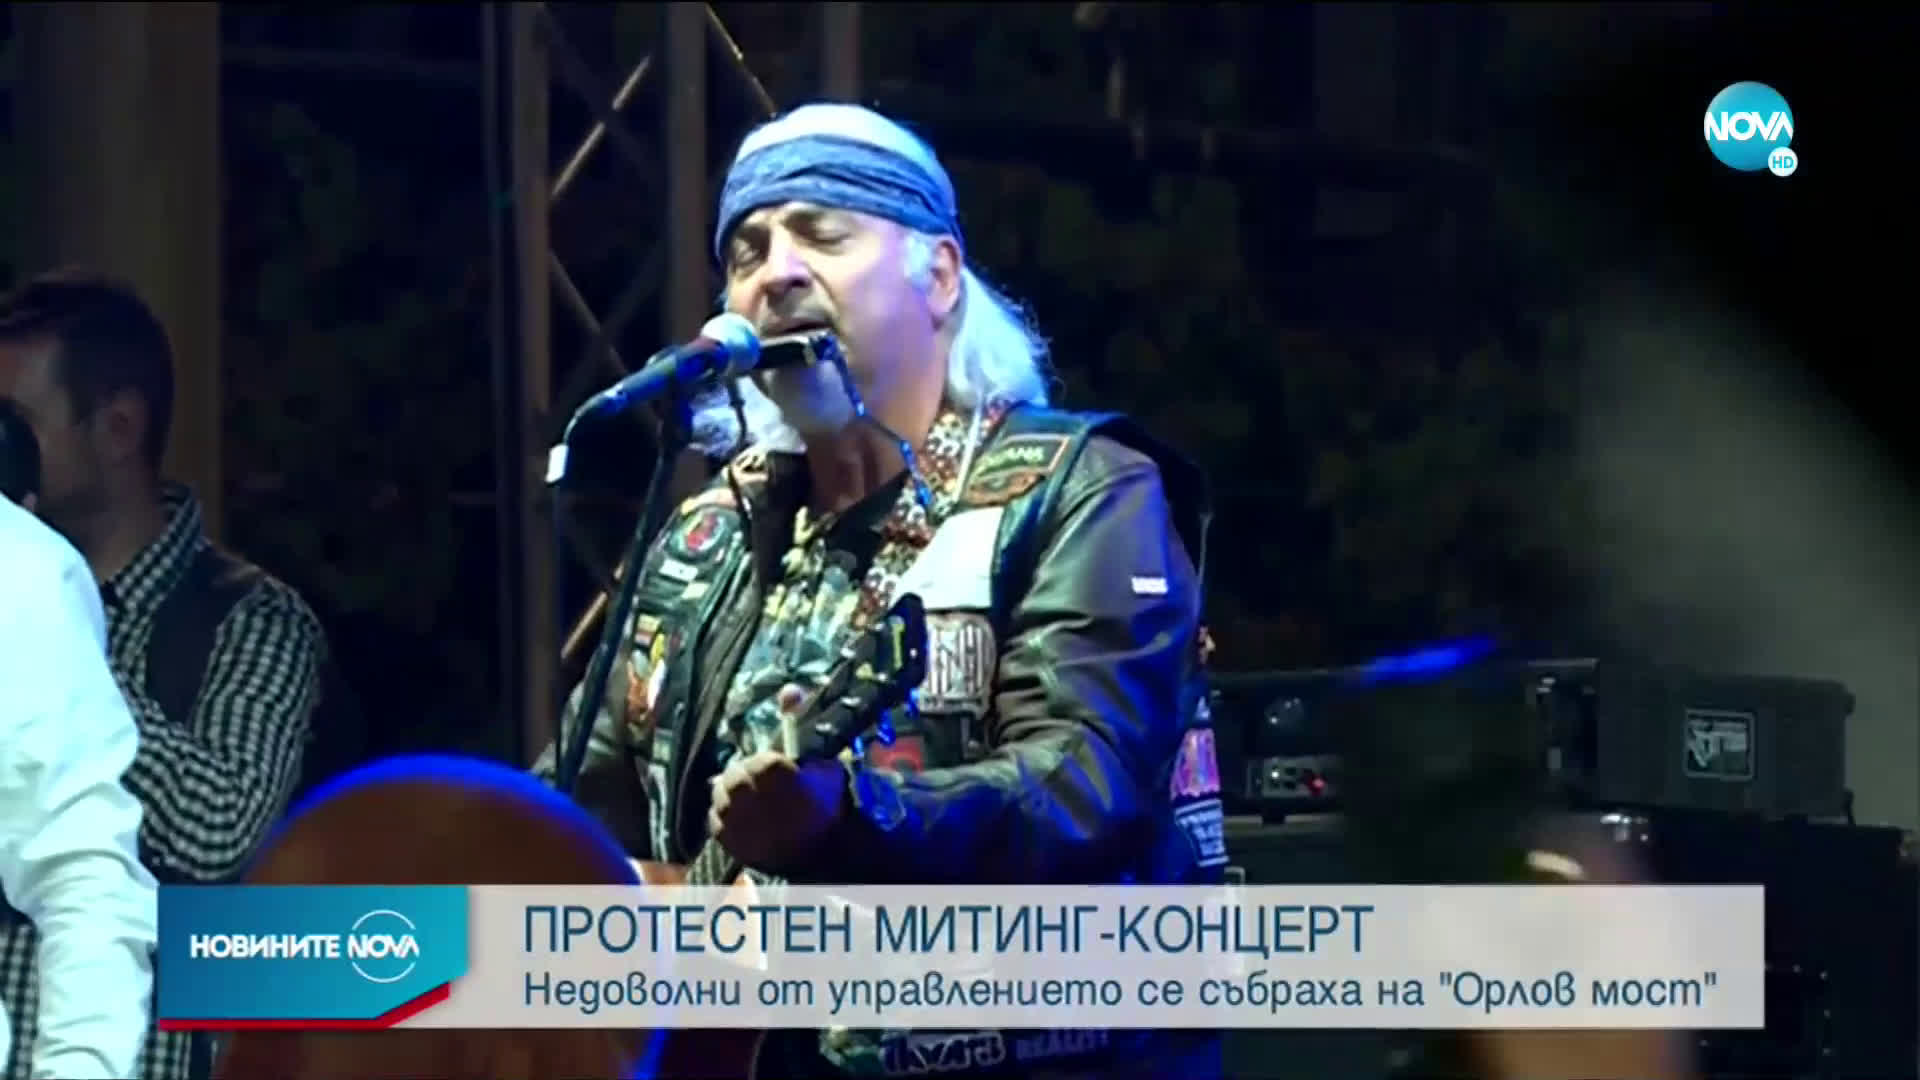 Митинг-концертът в София премина спокойно